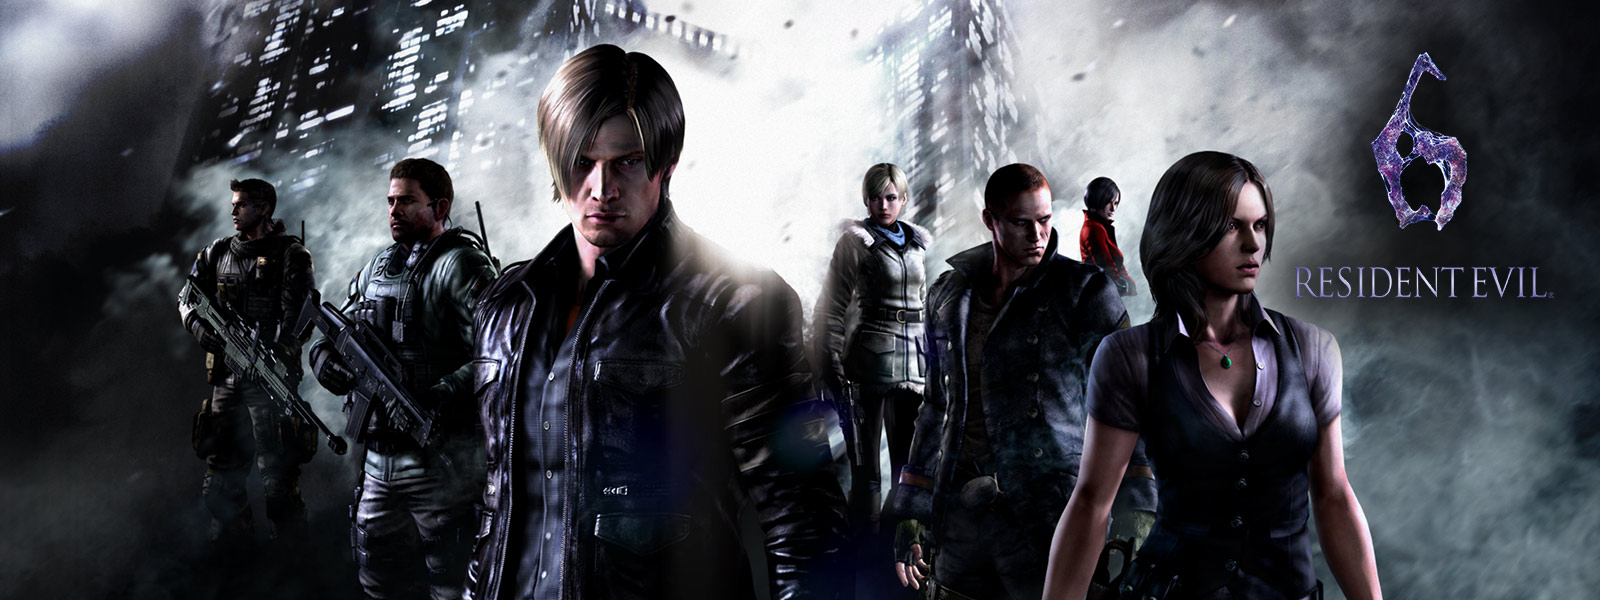 Resident Evil 6, všetky postavy z resident evil stojace pred hrozivými mrakodrapmi